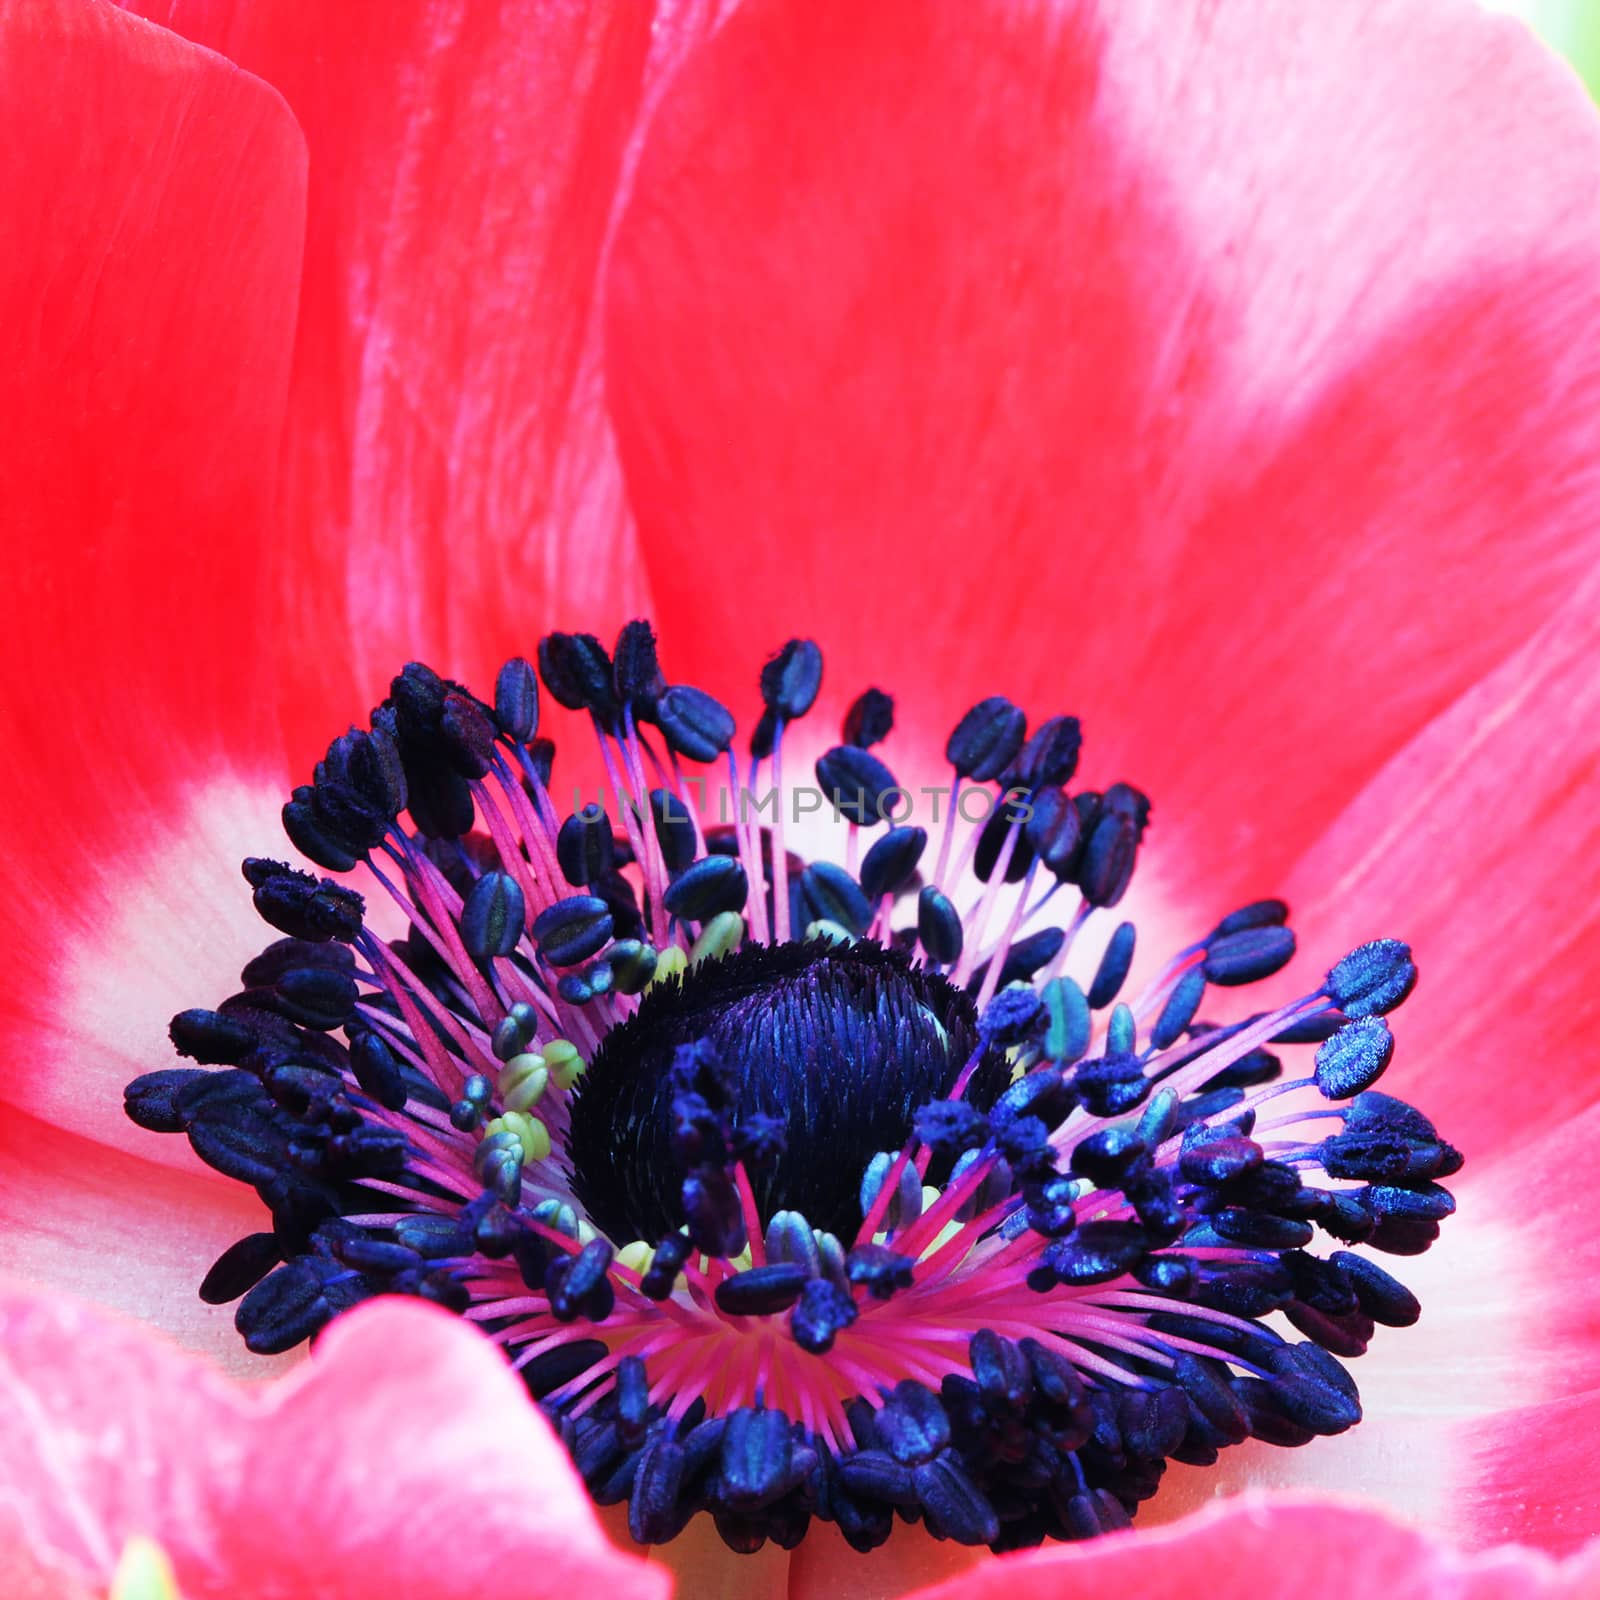 Red poppy flower macro photo by Voinakh